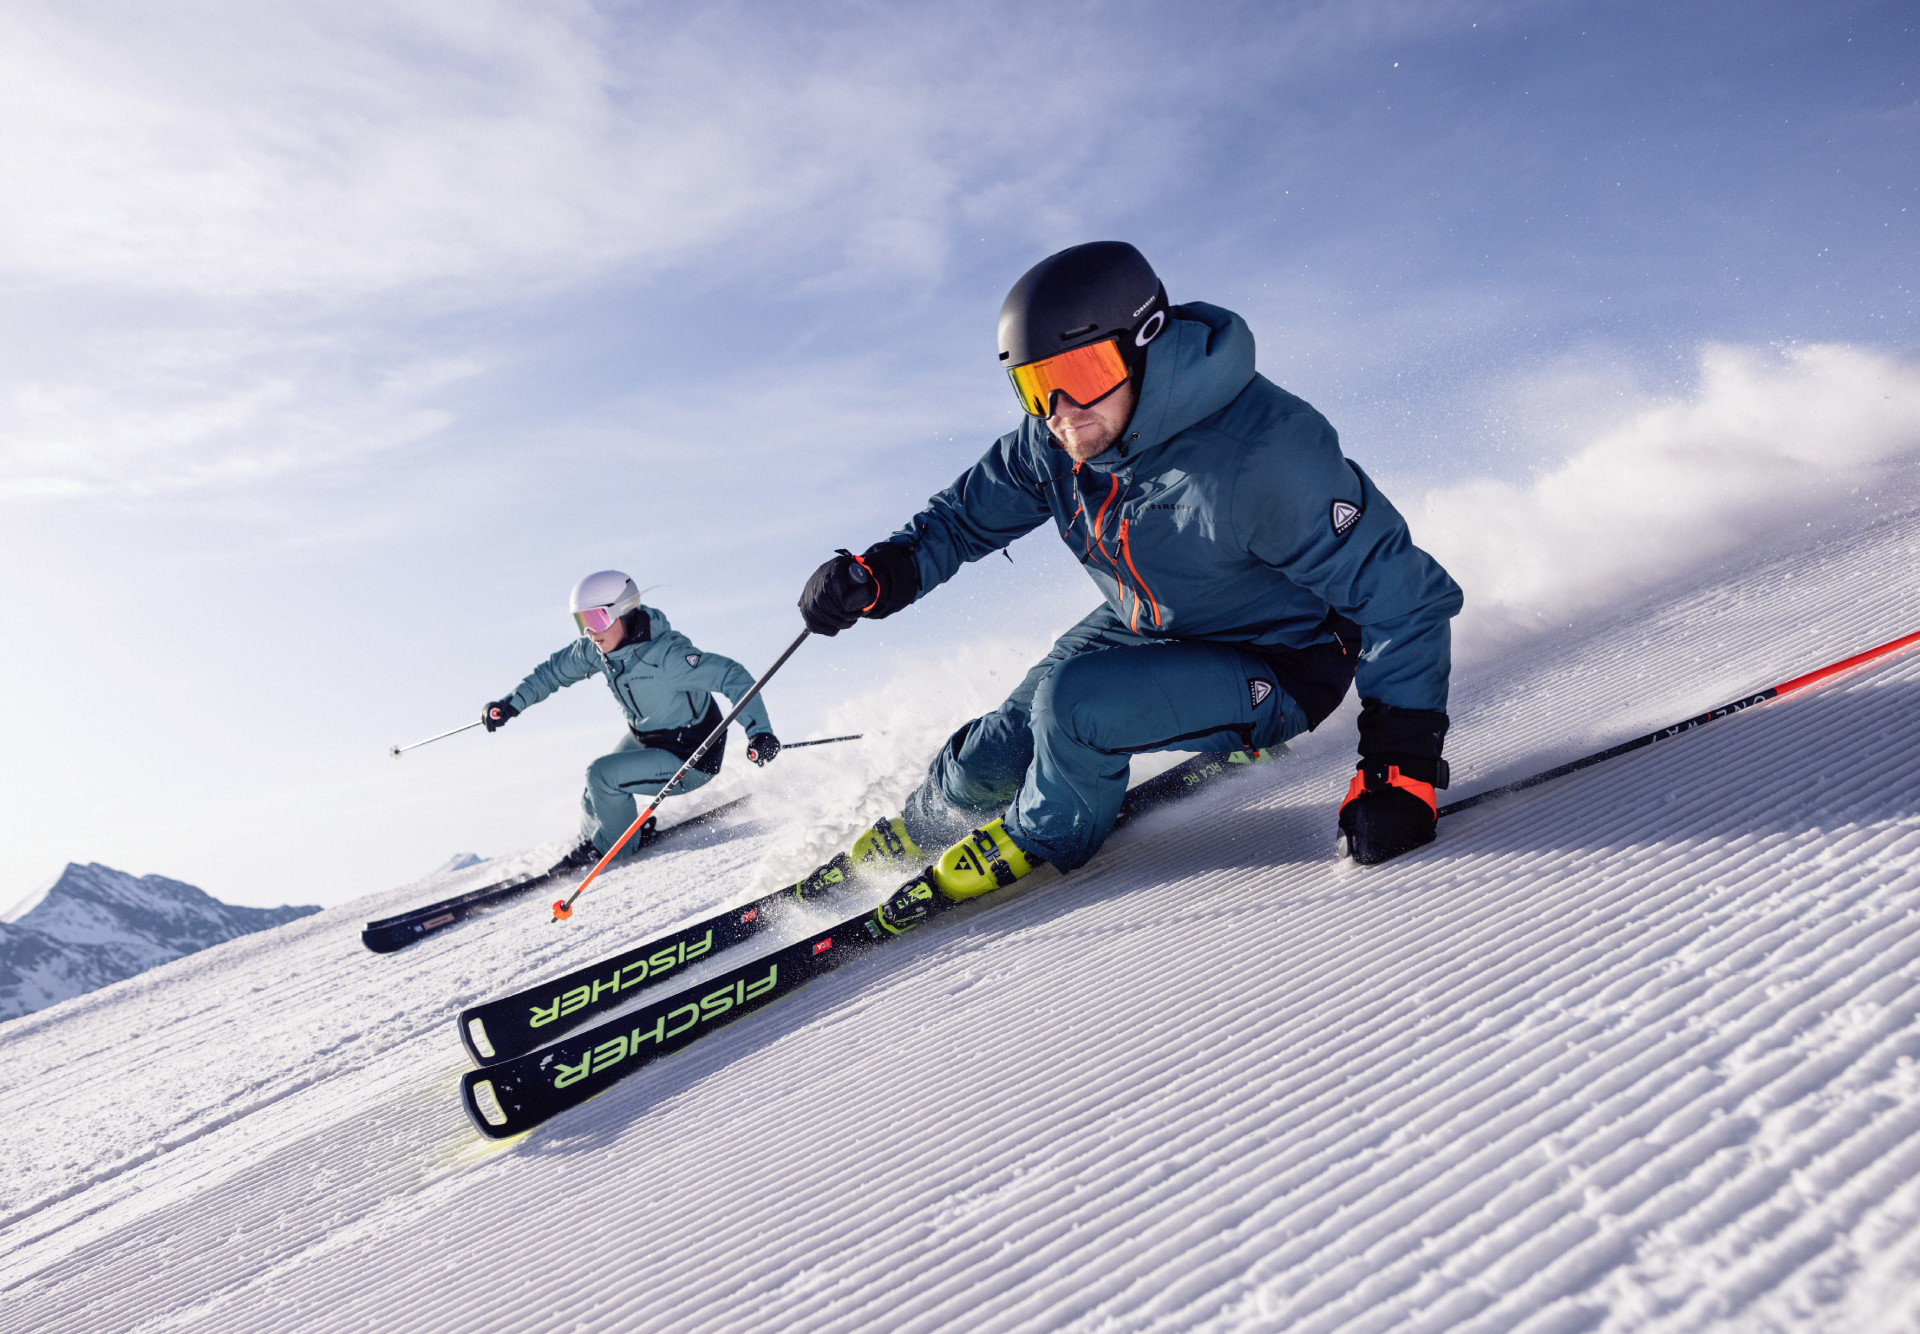 Užijte si zimu s kvalitním lyžařským vybavením